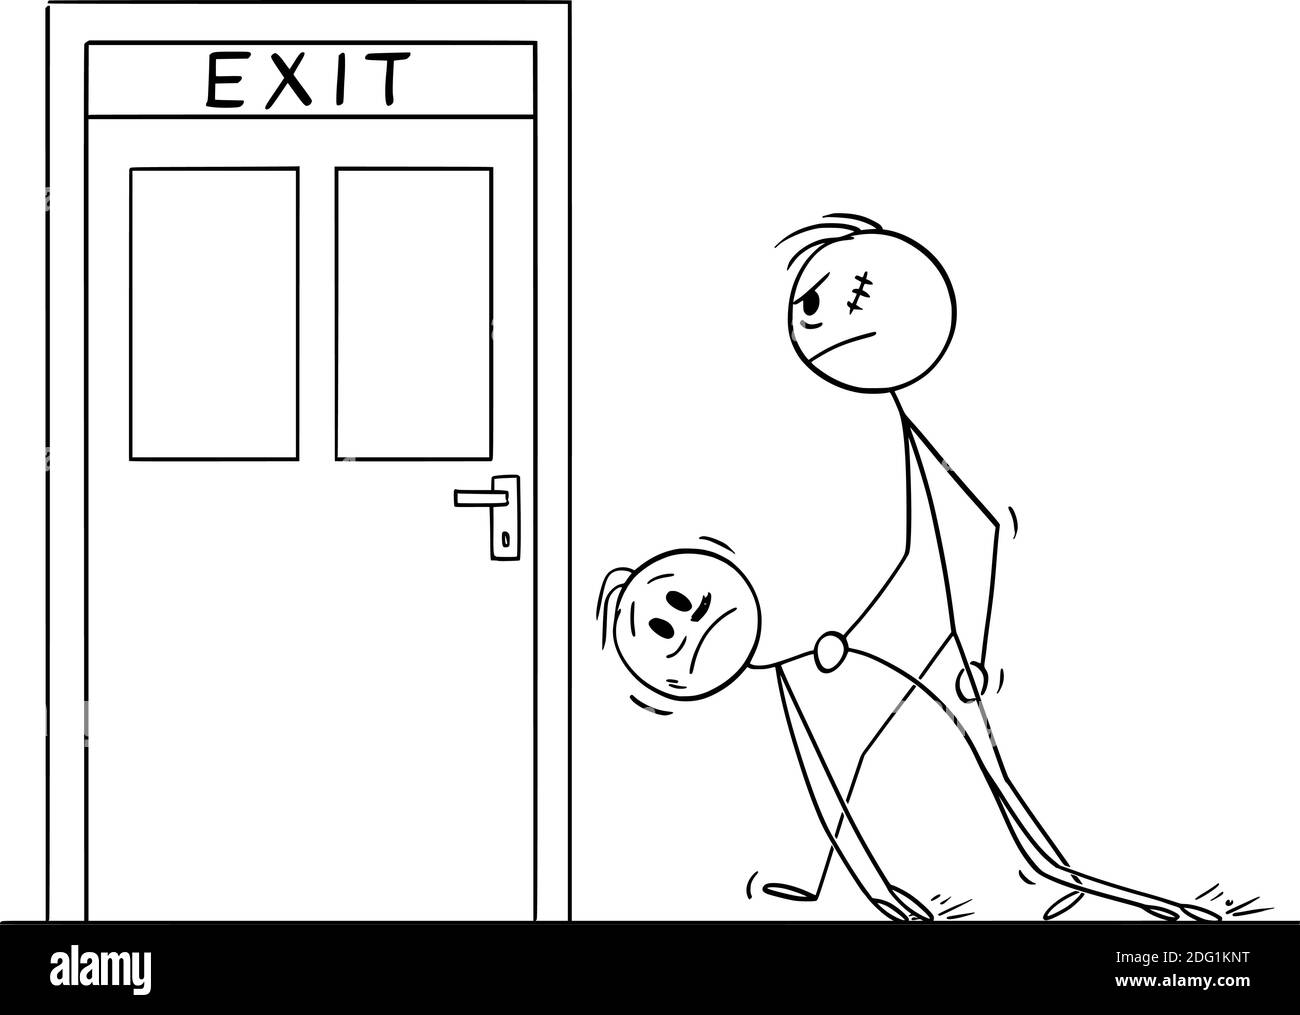 Vektor-Cartoon-Stick Figur Illustration von Türsteher oder großen rauhen Mann mit betrunkenen Männern an die Tür zu verlassen, um ihn aus dem Gebäude, Bar oder Club werfen. Stock Vektor